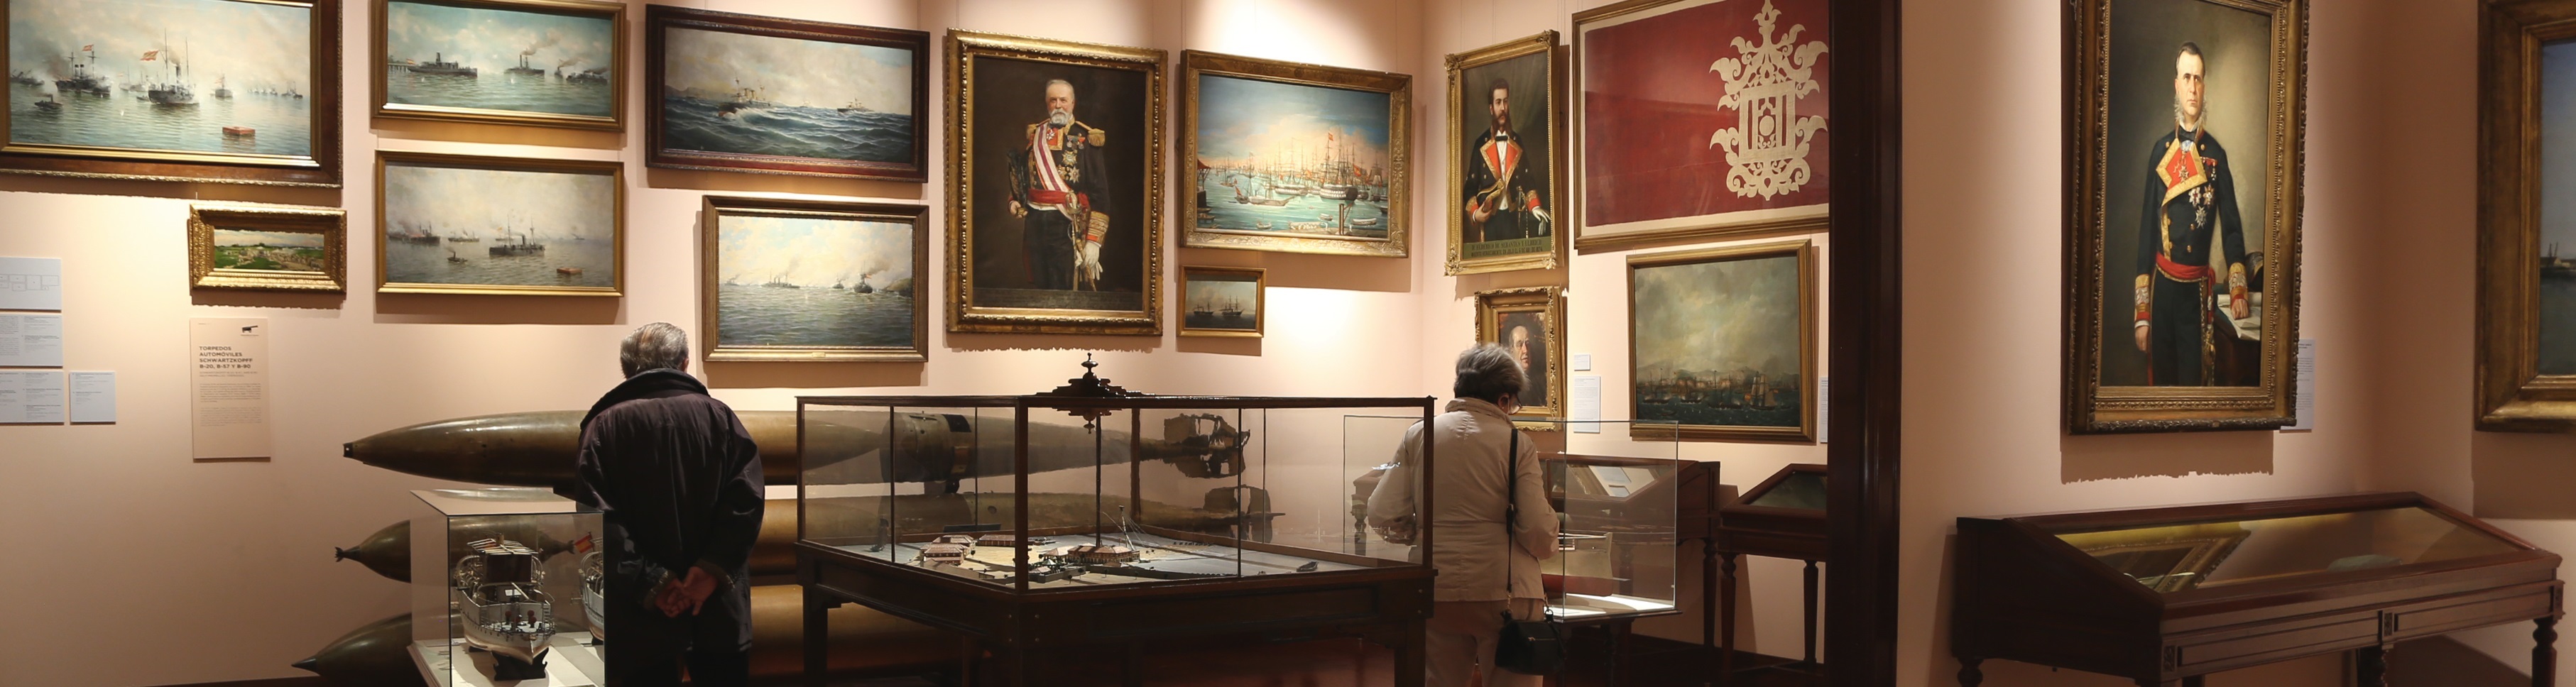 Persistente Popa ladrar Museo Naval - Inicio Museo Naval Madrid - Instituto de Historia y Cultura  Naval - Armada - Ministerio de Defensa - Gobierno de España